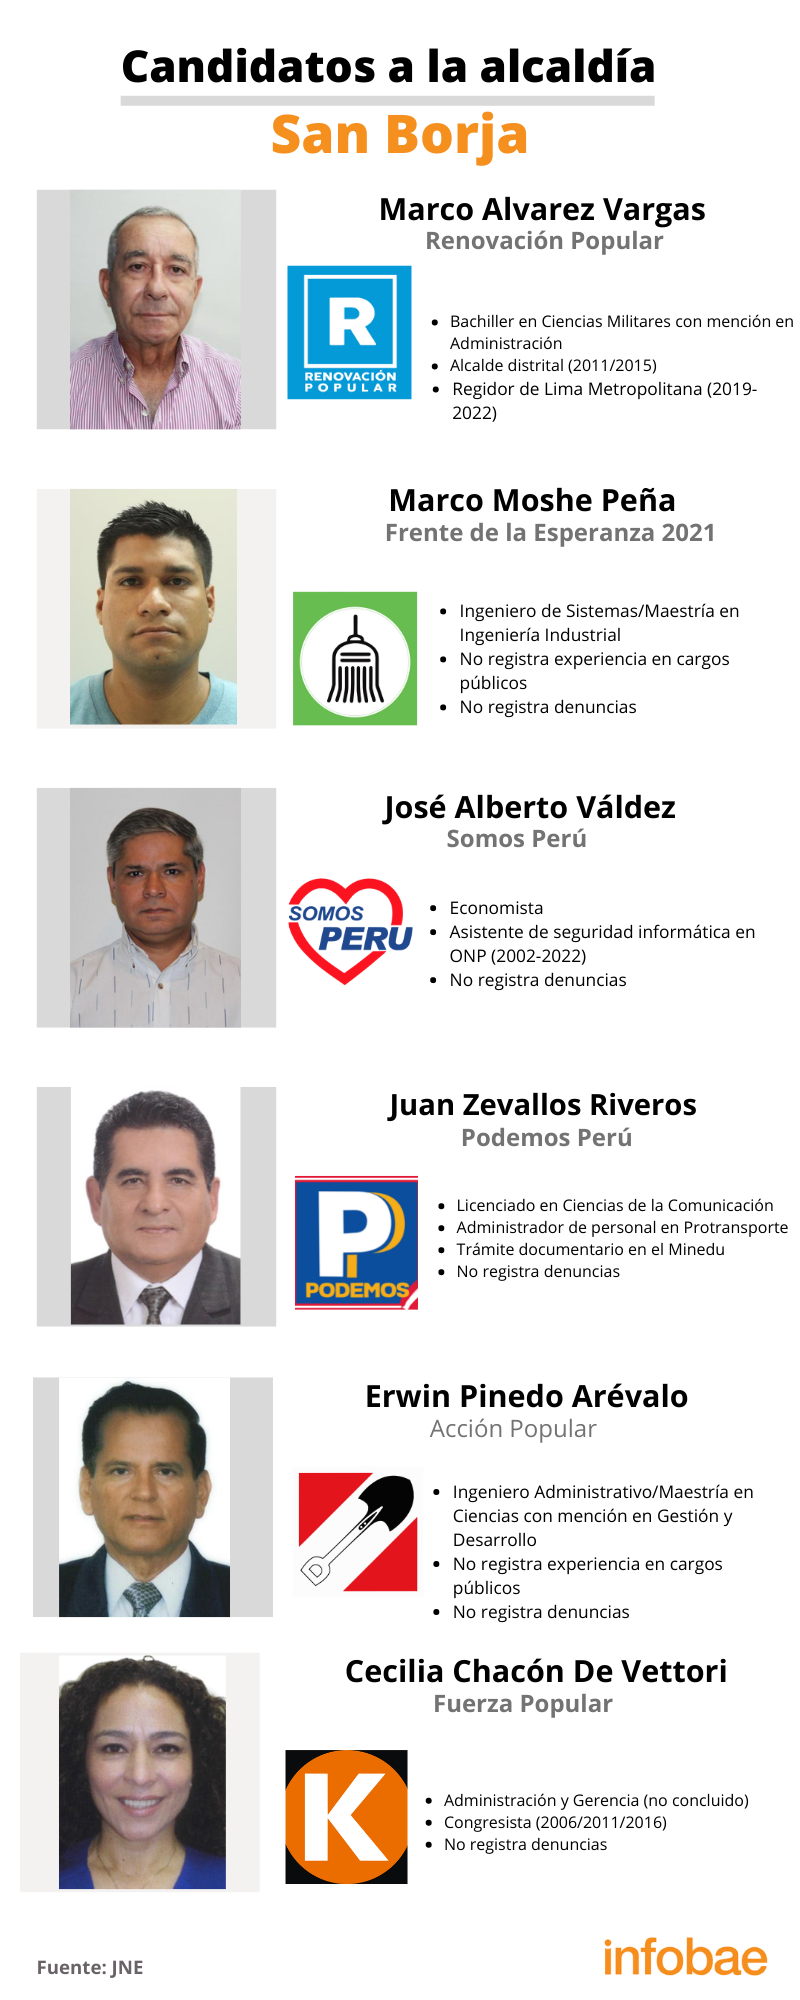 Candidatos a la alcaldía del distrito de San Borja